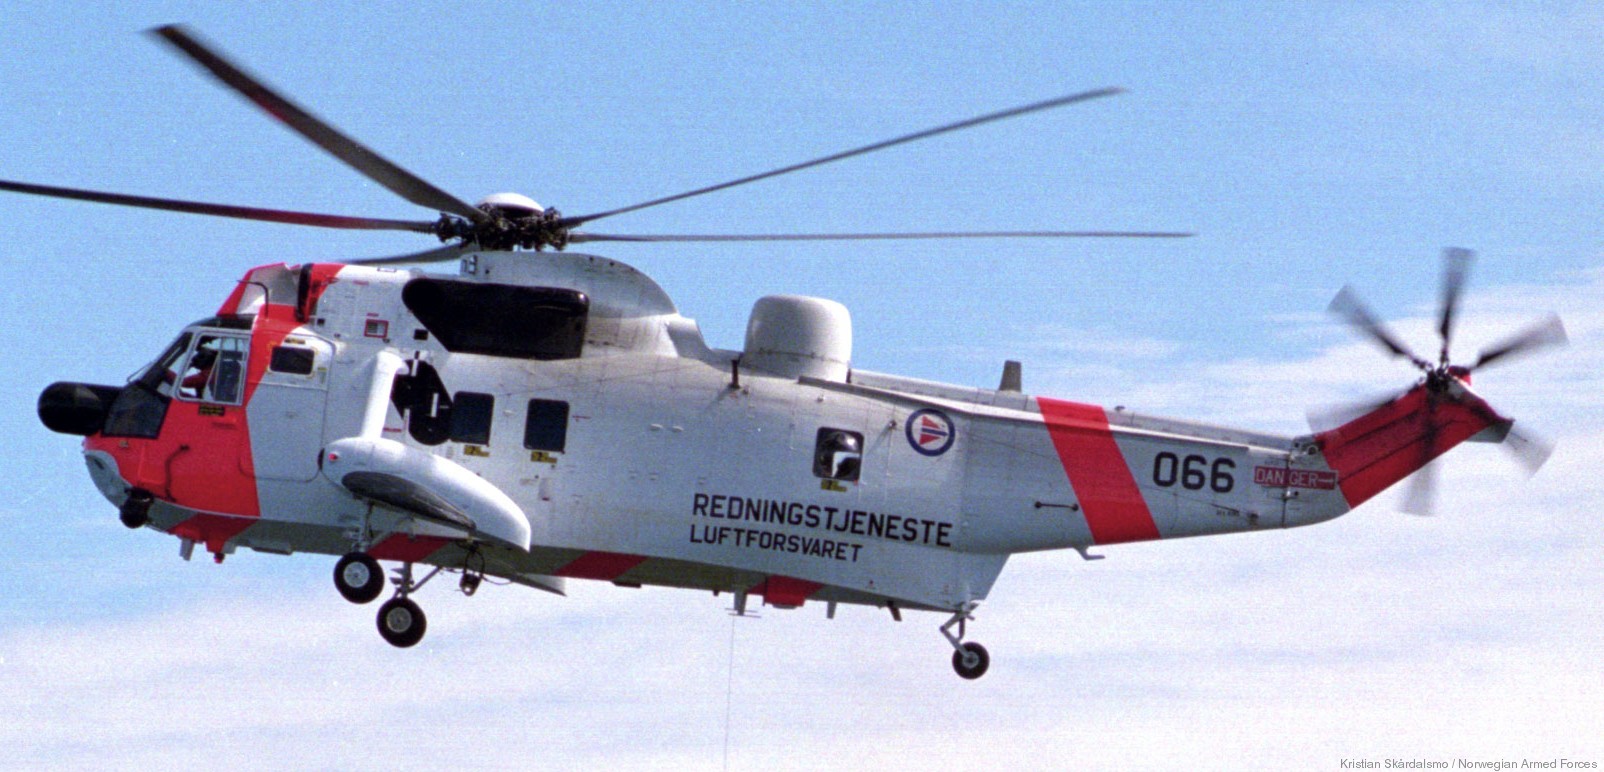 westland ws-61 sea king royal norwegian air force sar rescue 330 squadron skvadron luftforsvaret 066 06